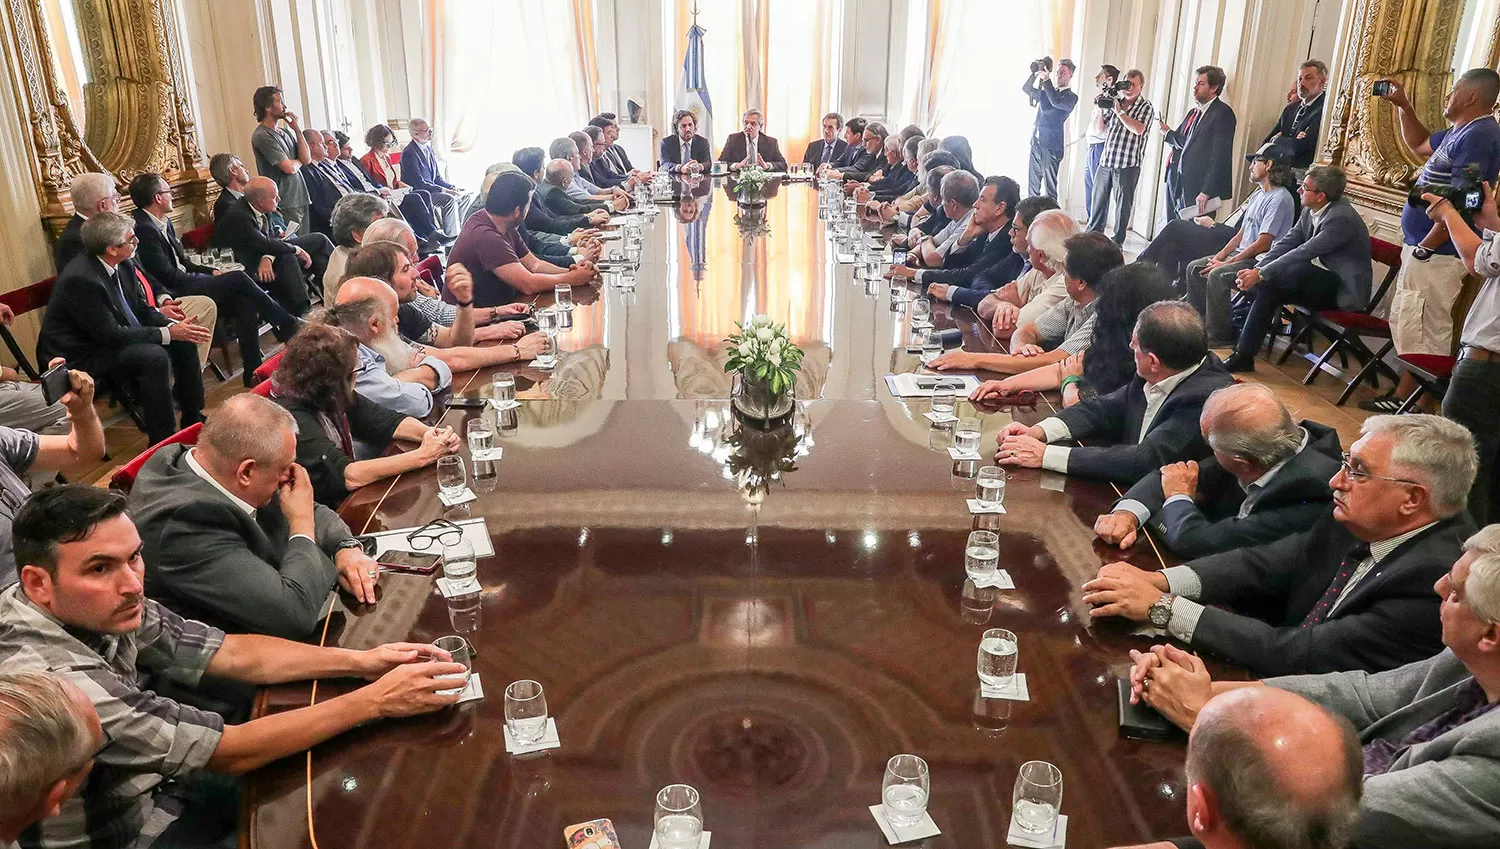 DE ACUERDO. El Presidente se reunió con empresarios y sindicalistas para firmar un pacto social. TÉLAM